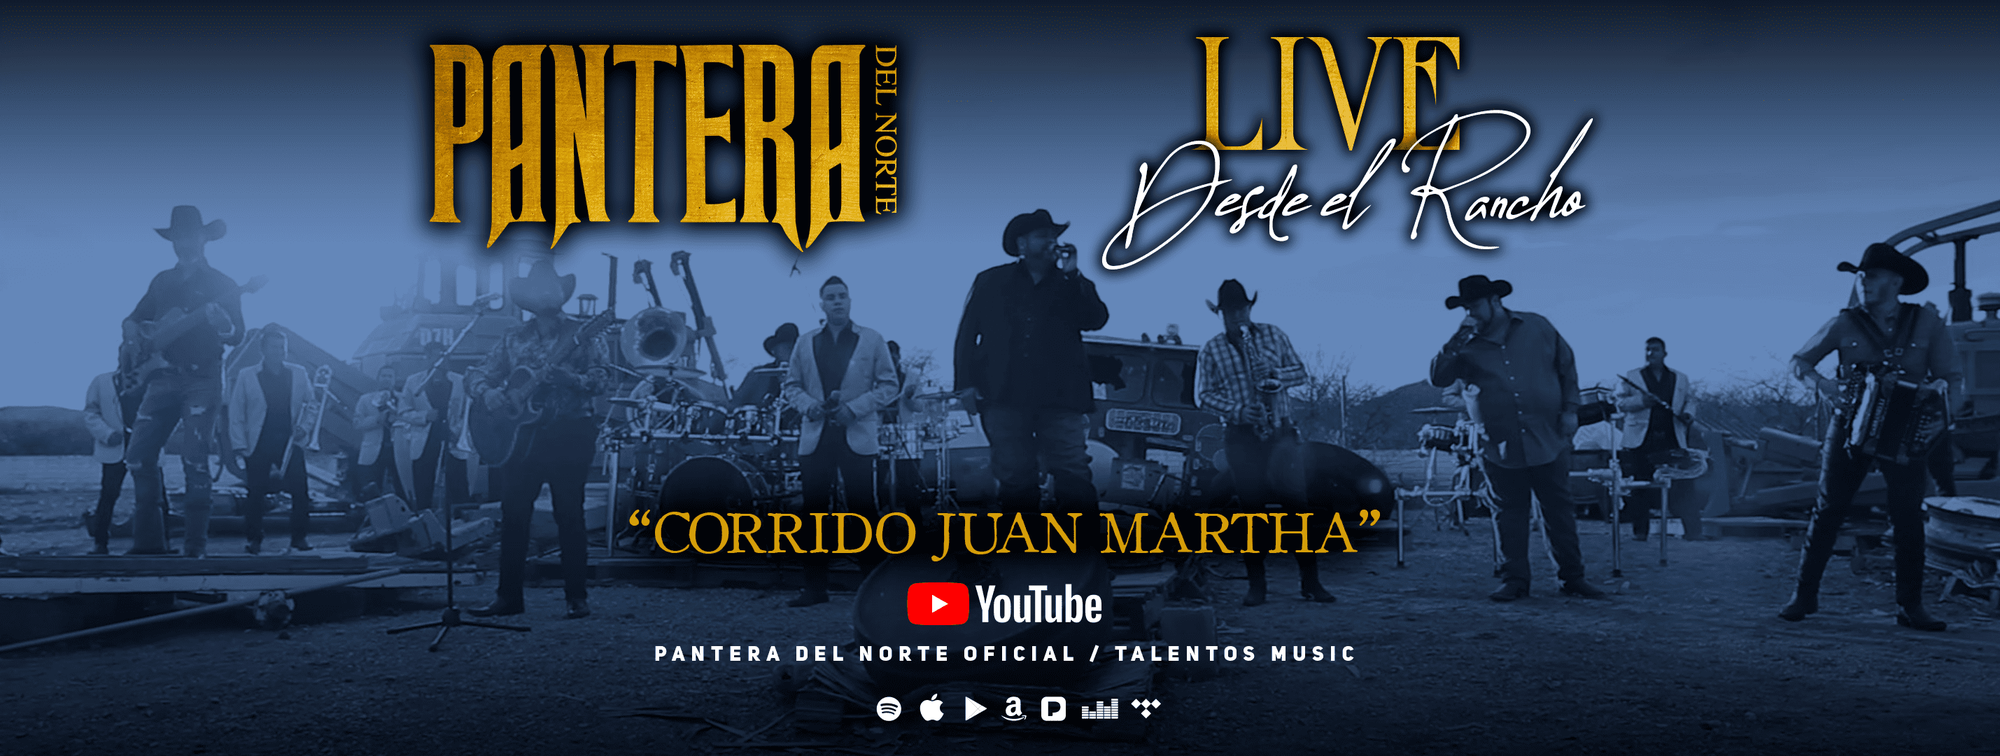 Mira aquí el nuevo Video Oficial de "Pantera Del Norte - Corrido Juan Martha - Live Desde El Rancho"